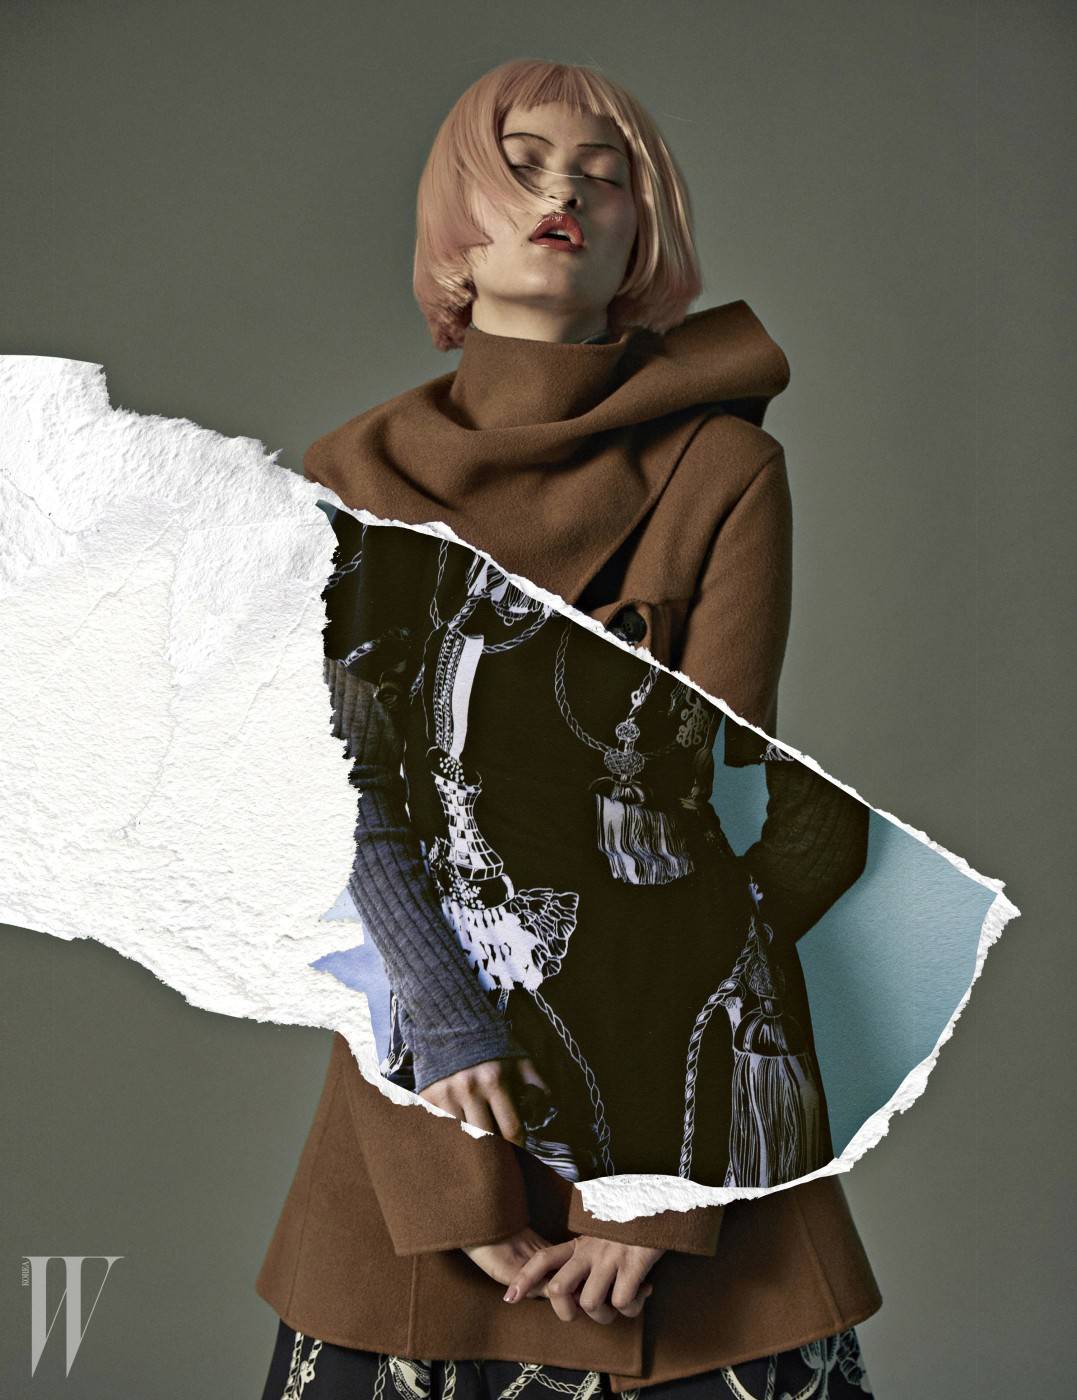 캐멀 코트는 디올 제품. 가격 미정. 네이비 드레스는 에르메스 제품. 가격 미정. 회색 니트 톱은 DKNY 제품. 39만5천원.